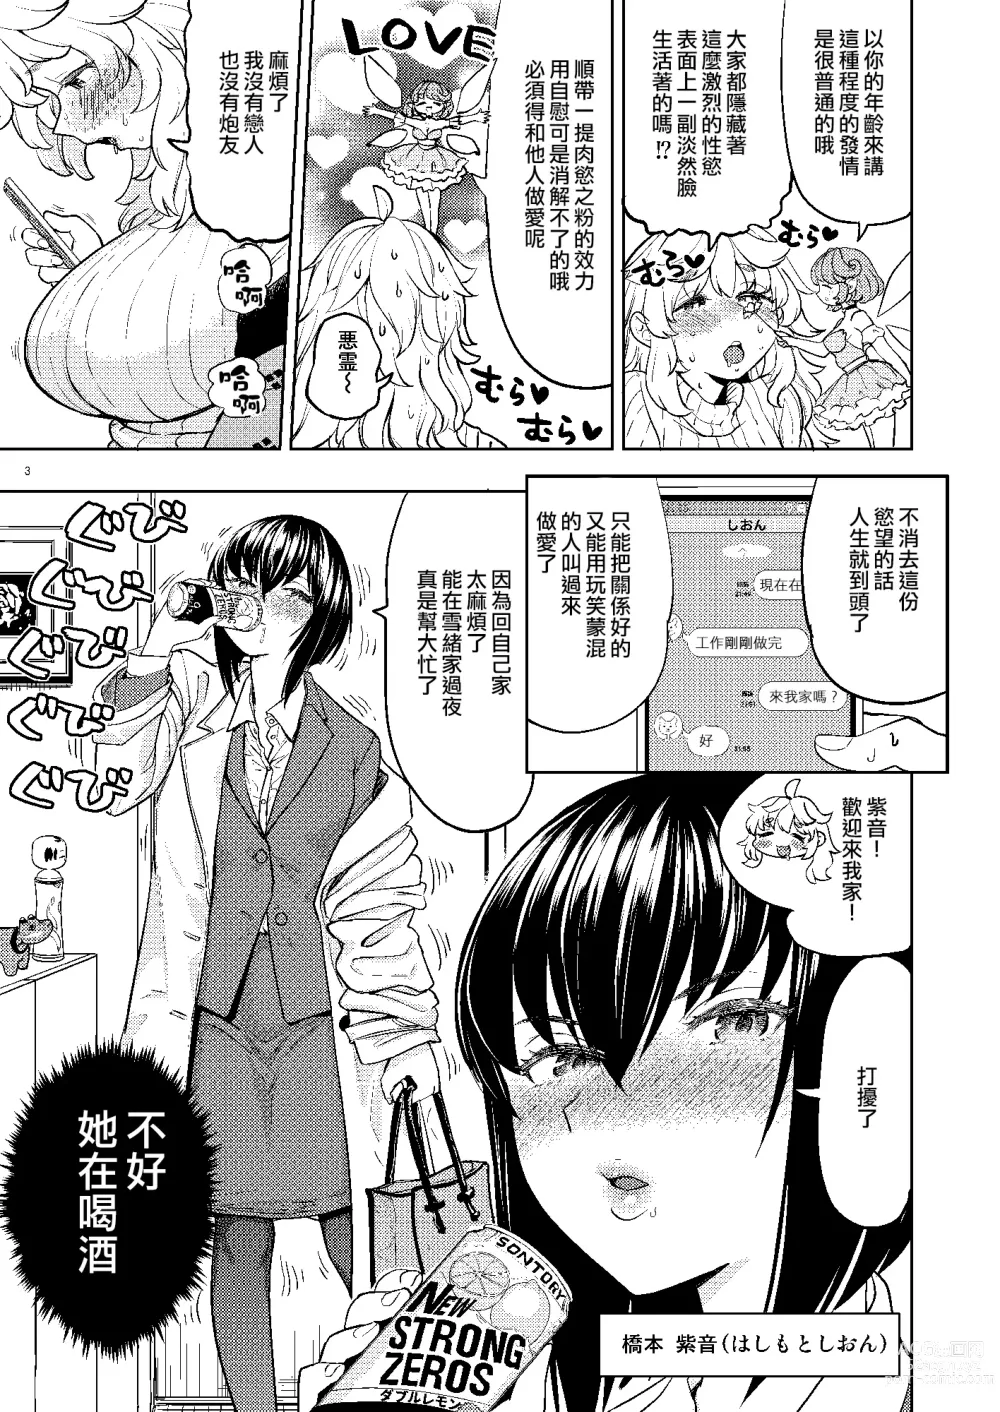 Page 5 of doujinshi 愛のようせい